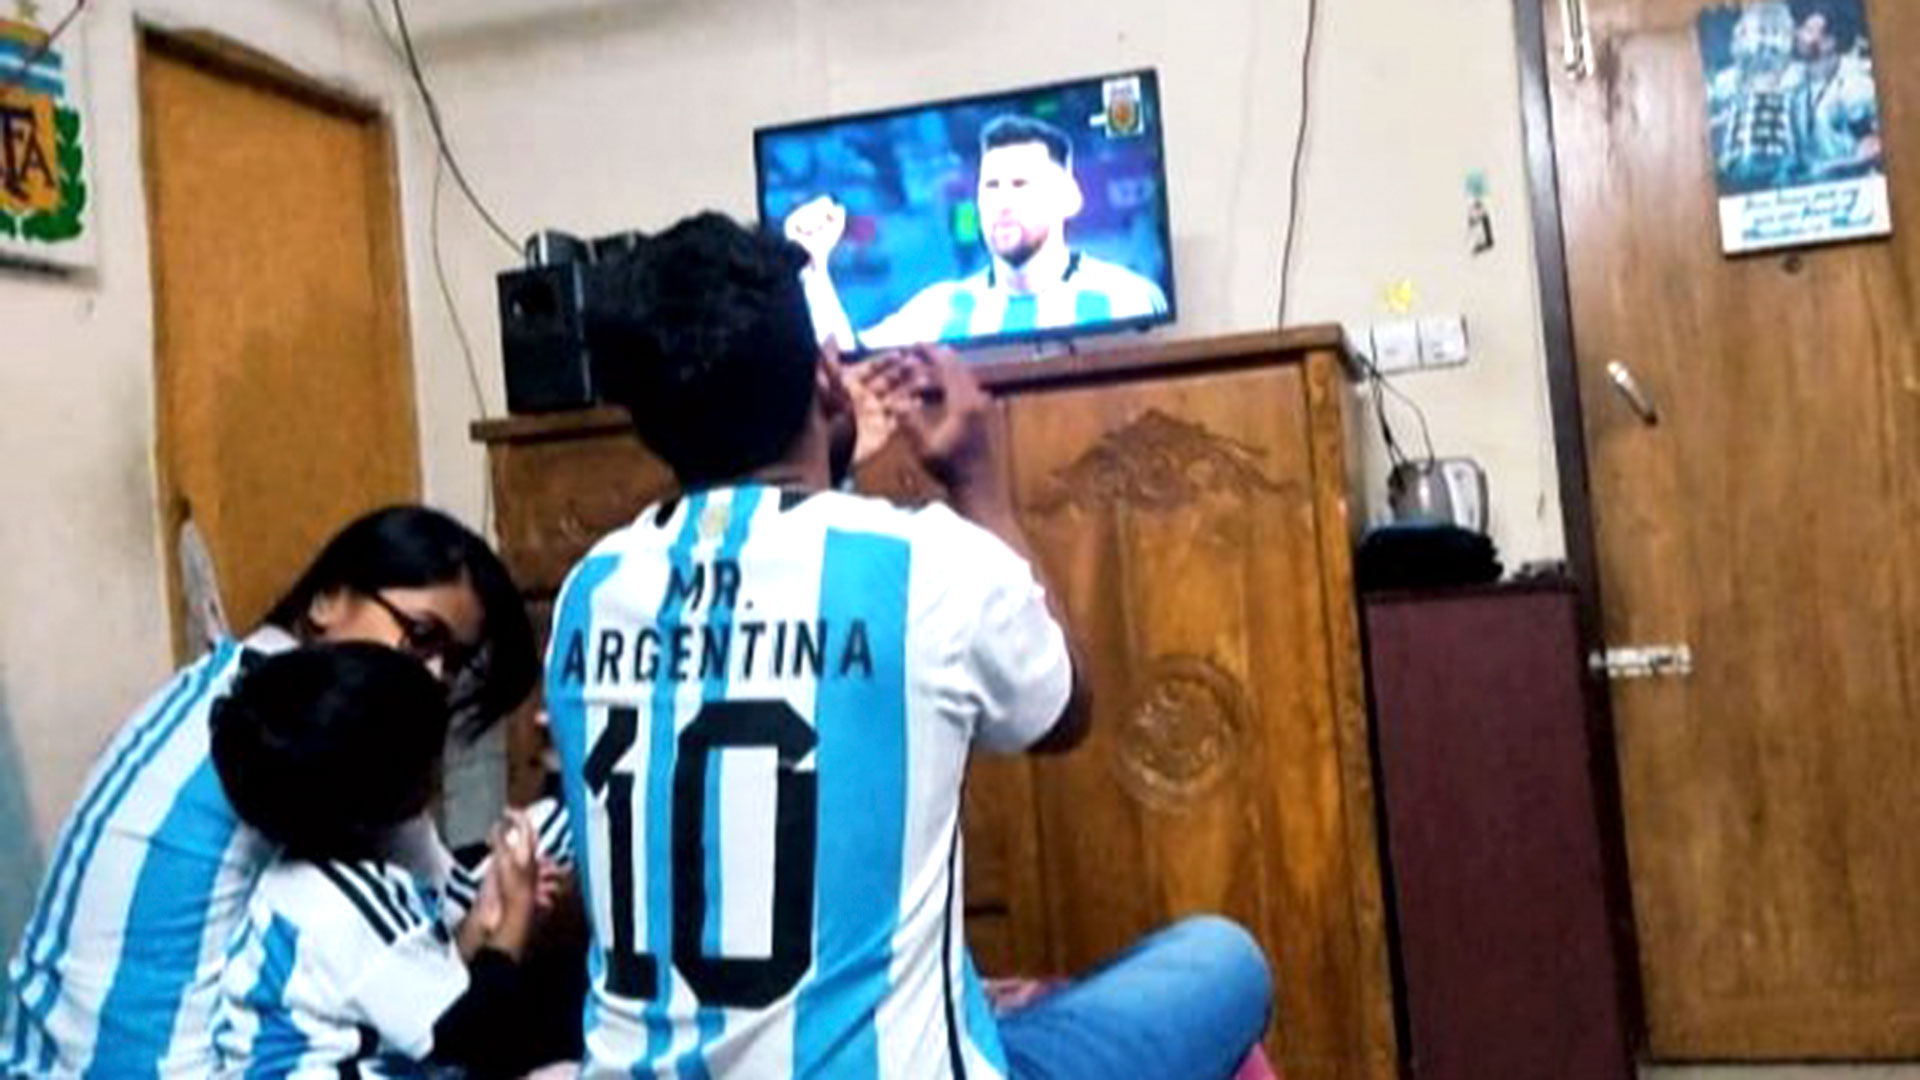 Pintu y su familia, durante uno de los partidos de la Selección Argentina en Qatar 2022